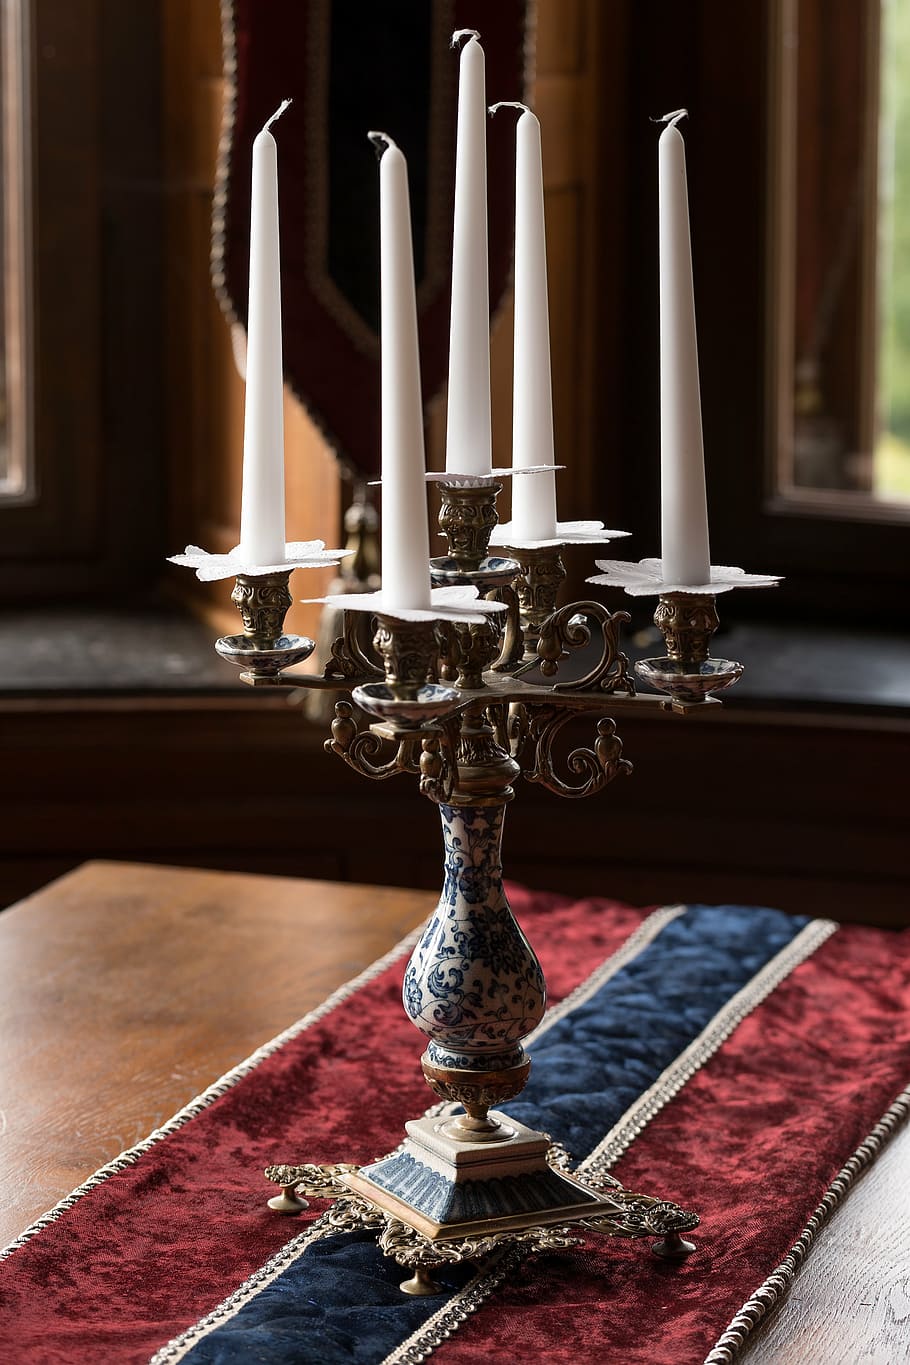 candelabra, candles, decoration, old, antique, elegant, interior, classical, candlestick holder, indoors